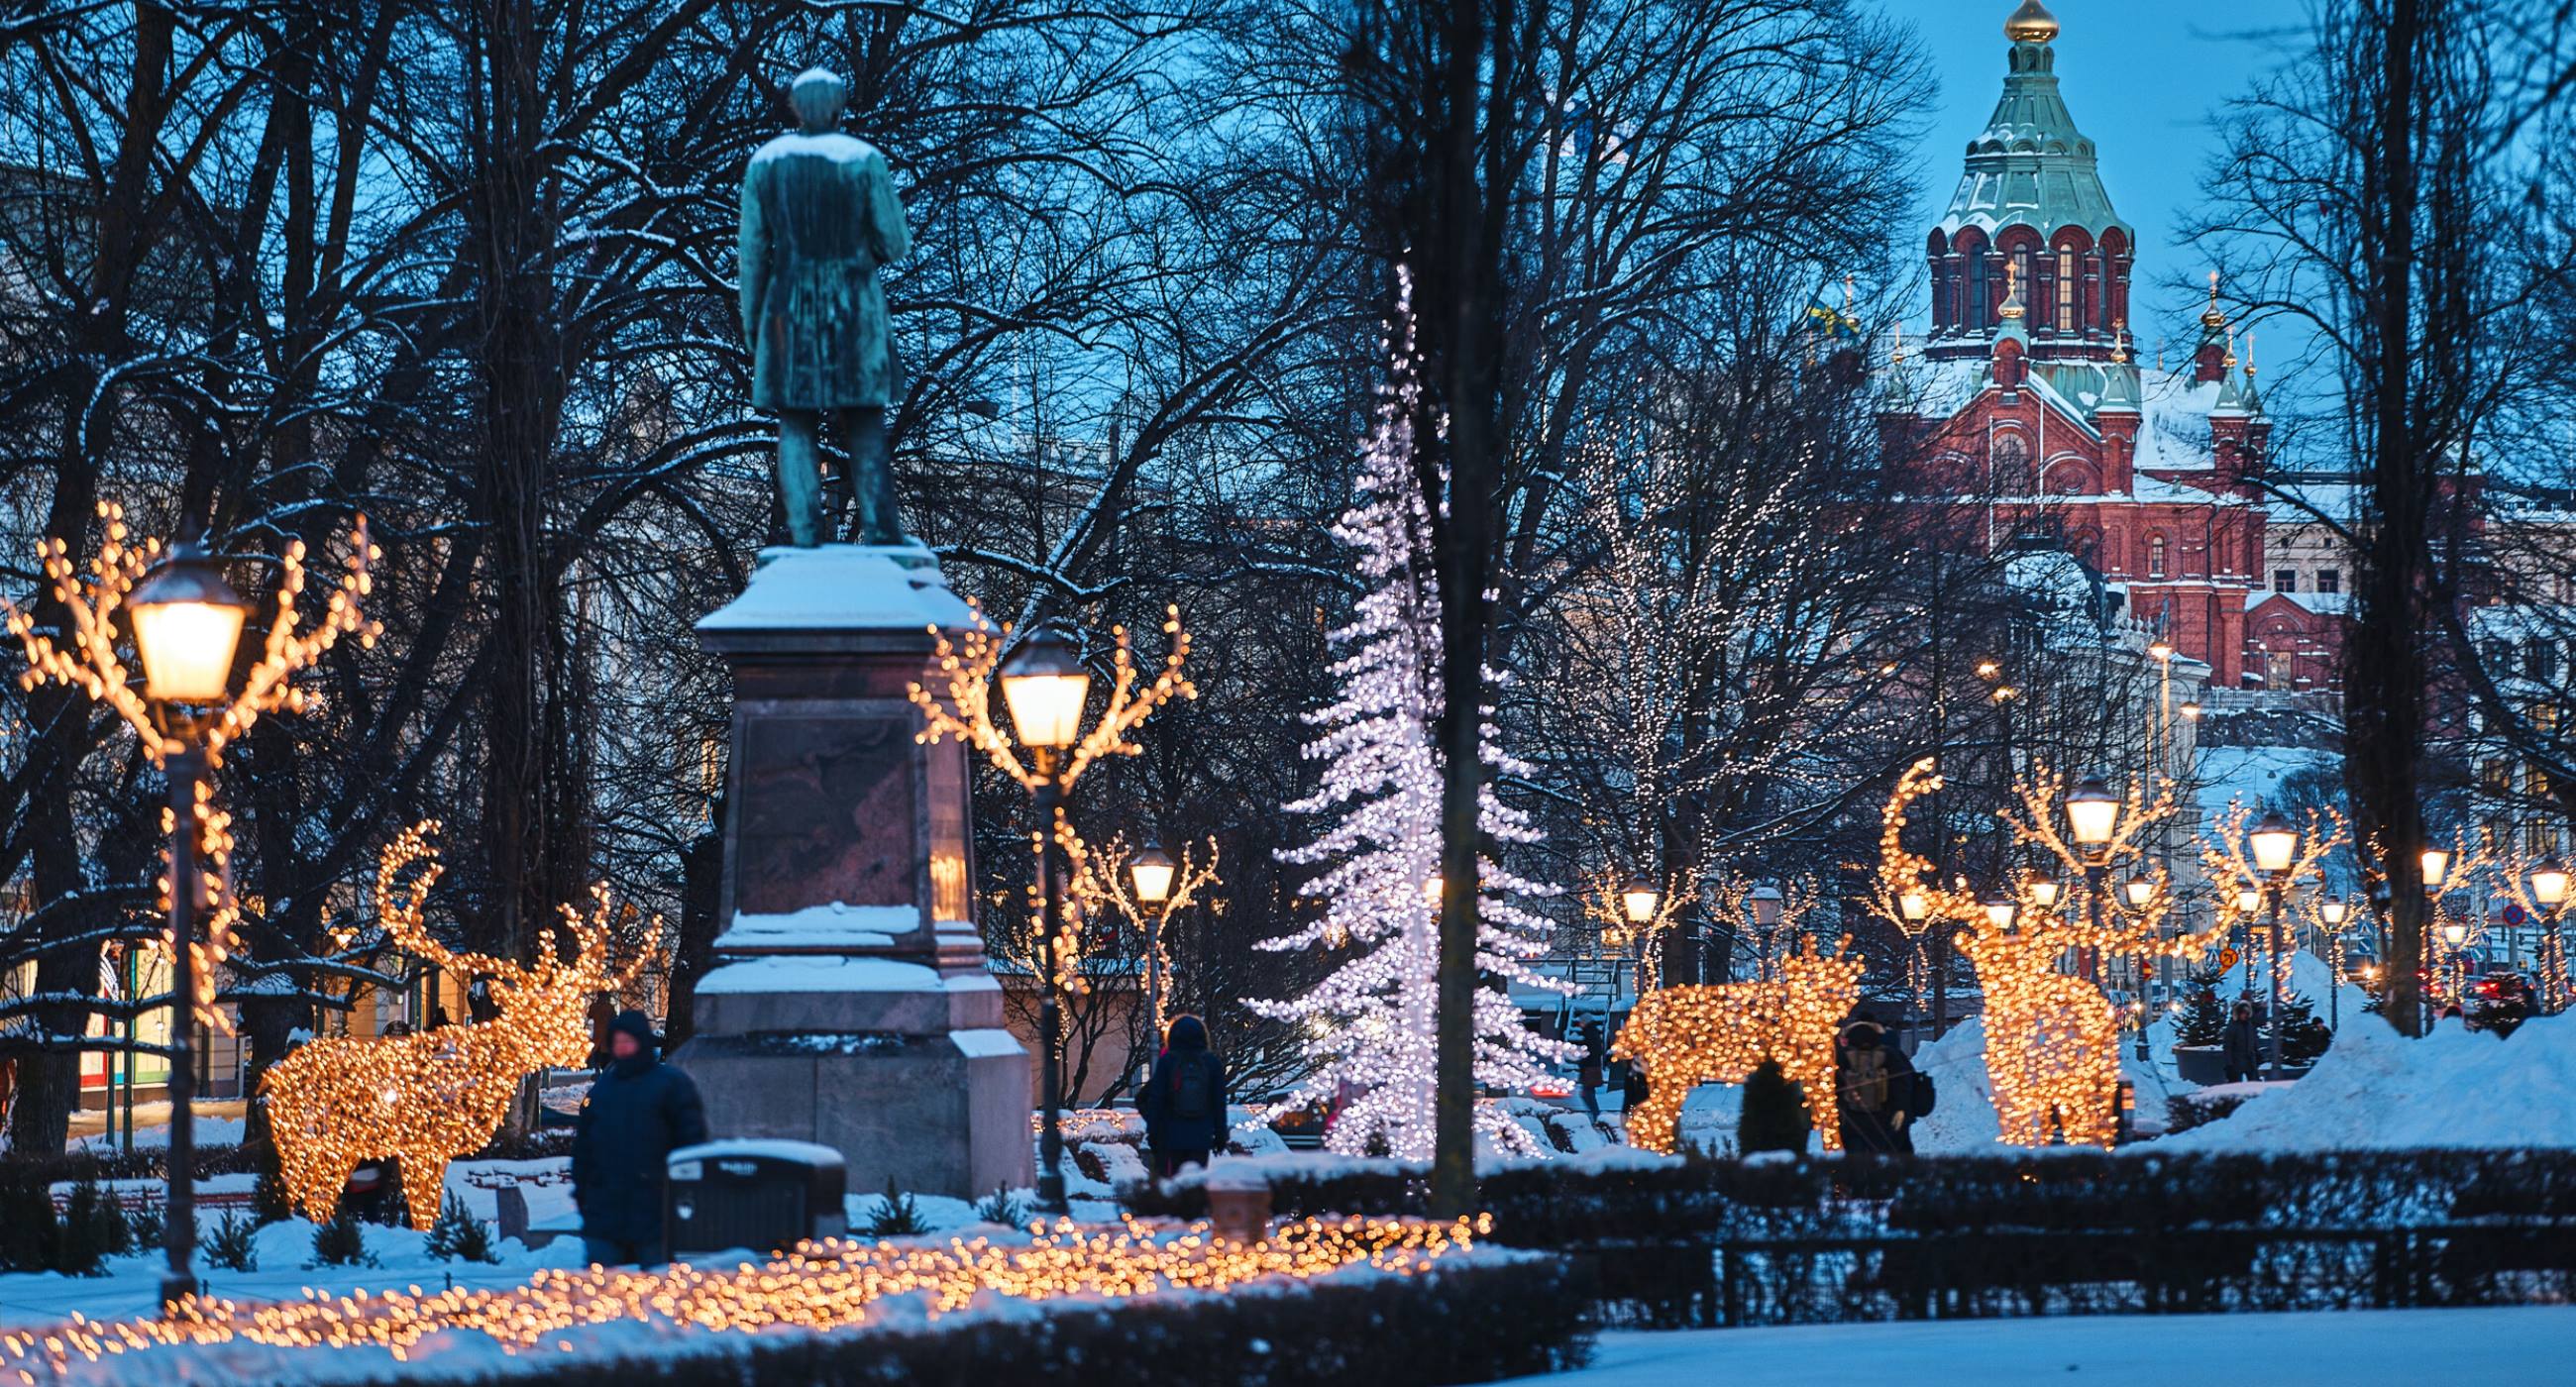 Winter-scenes-Christmas-lights-on-a-street-in-Helsinki